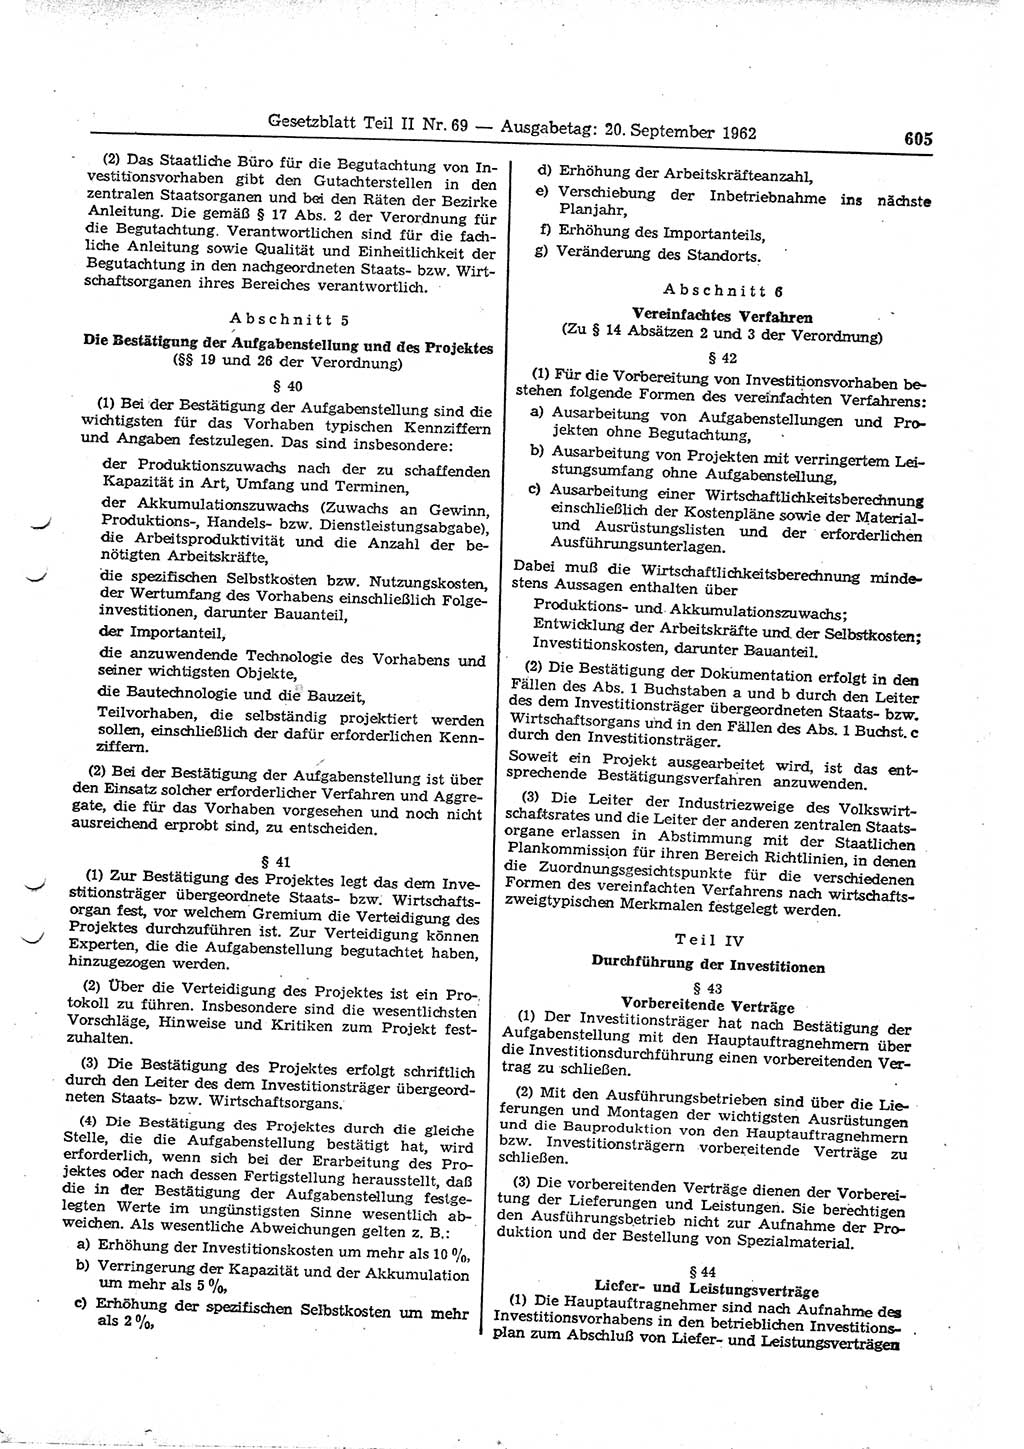 Gesetzblatt (GBl.) der Deutschen Demokratischen Republik (DDR) Teil ⅠⅠ 1962, Seite 605 (GBl. DDR ⅠⅠ 1962, S. 605)